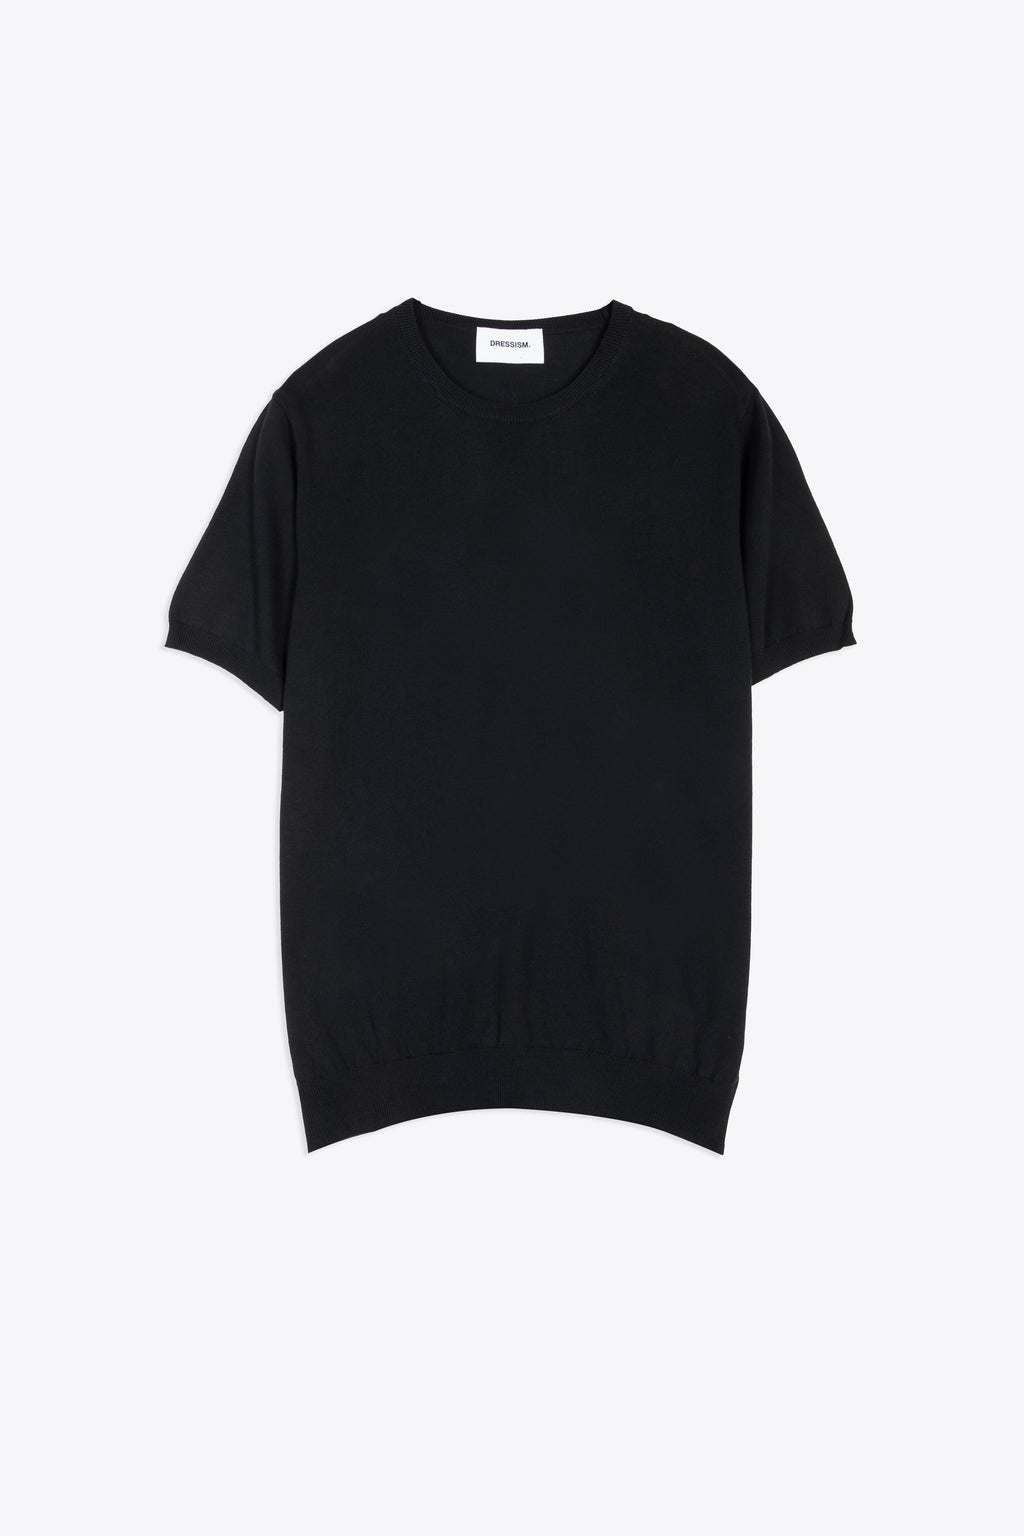 alt-image__Black-cotton-knit-t-shirt